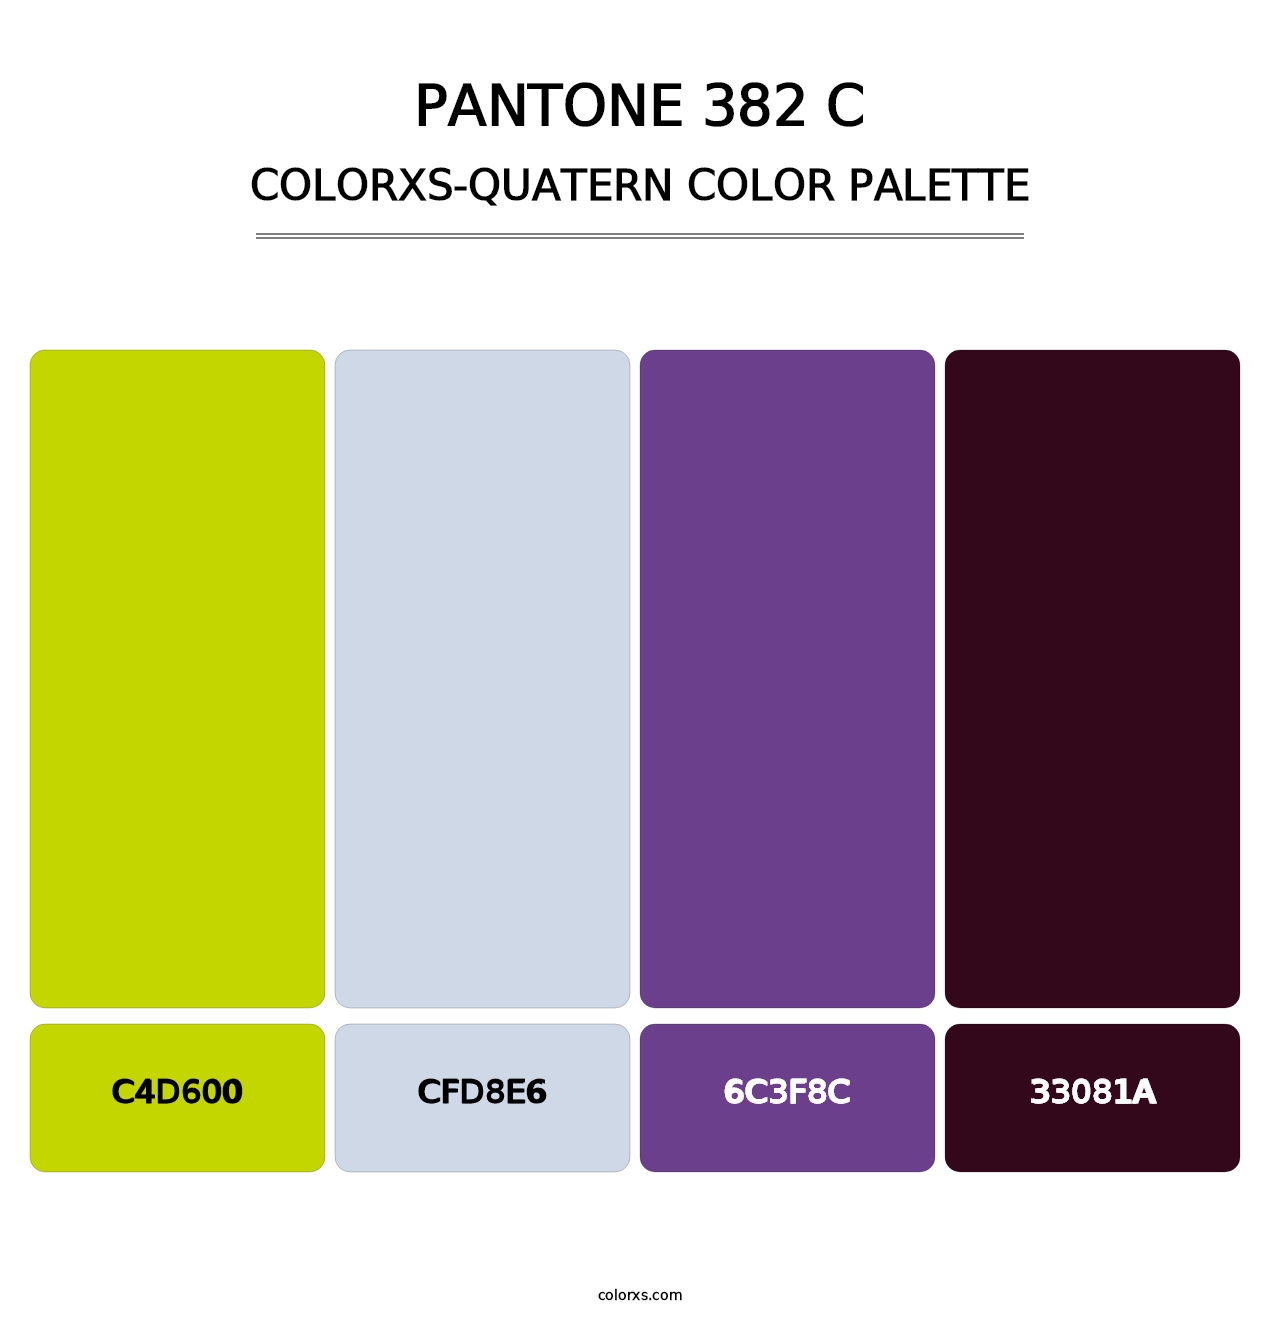 PANTONE 382 C - Colorxs Quatern Palette